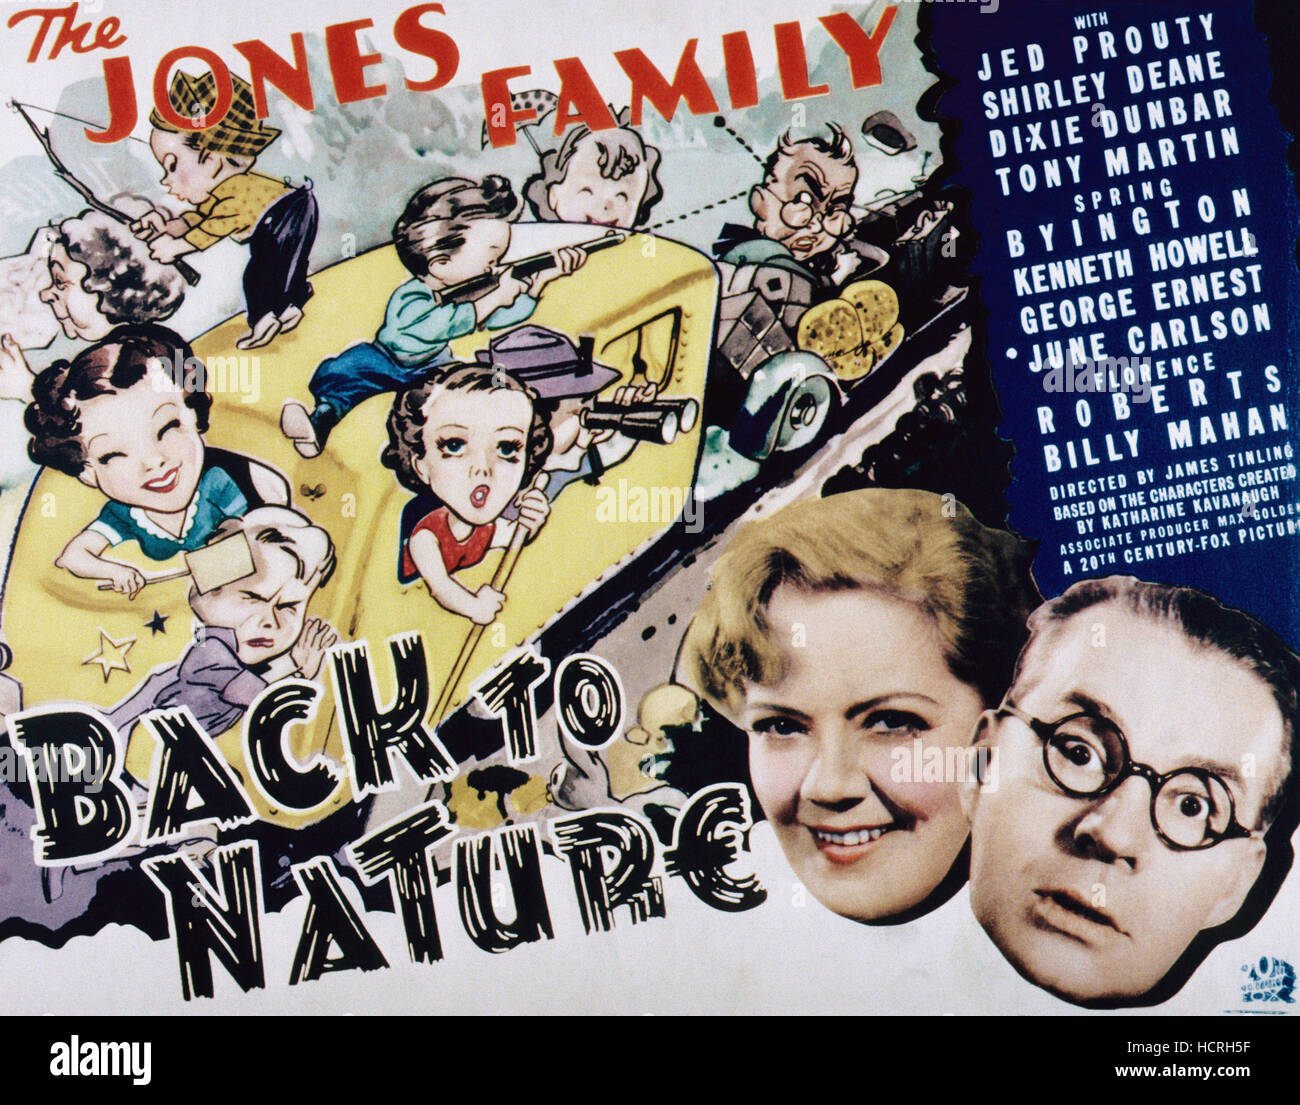 Volver a la naturaleza, parte inferior izquierda, Spring Byington, Jed Prouty, 1936, TM y copyright ©20th Century Fox Film Corp. Todos los derechos Foto de stock